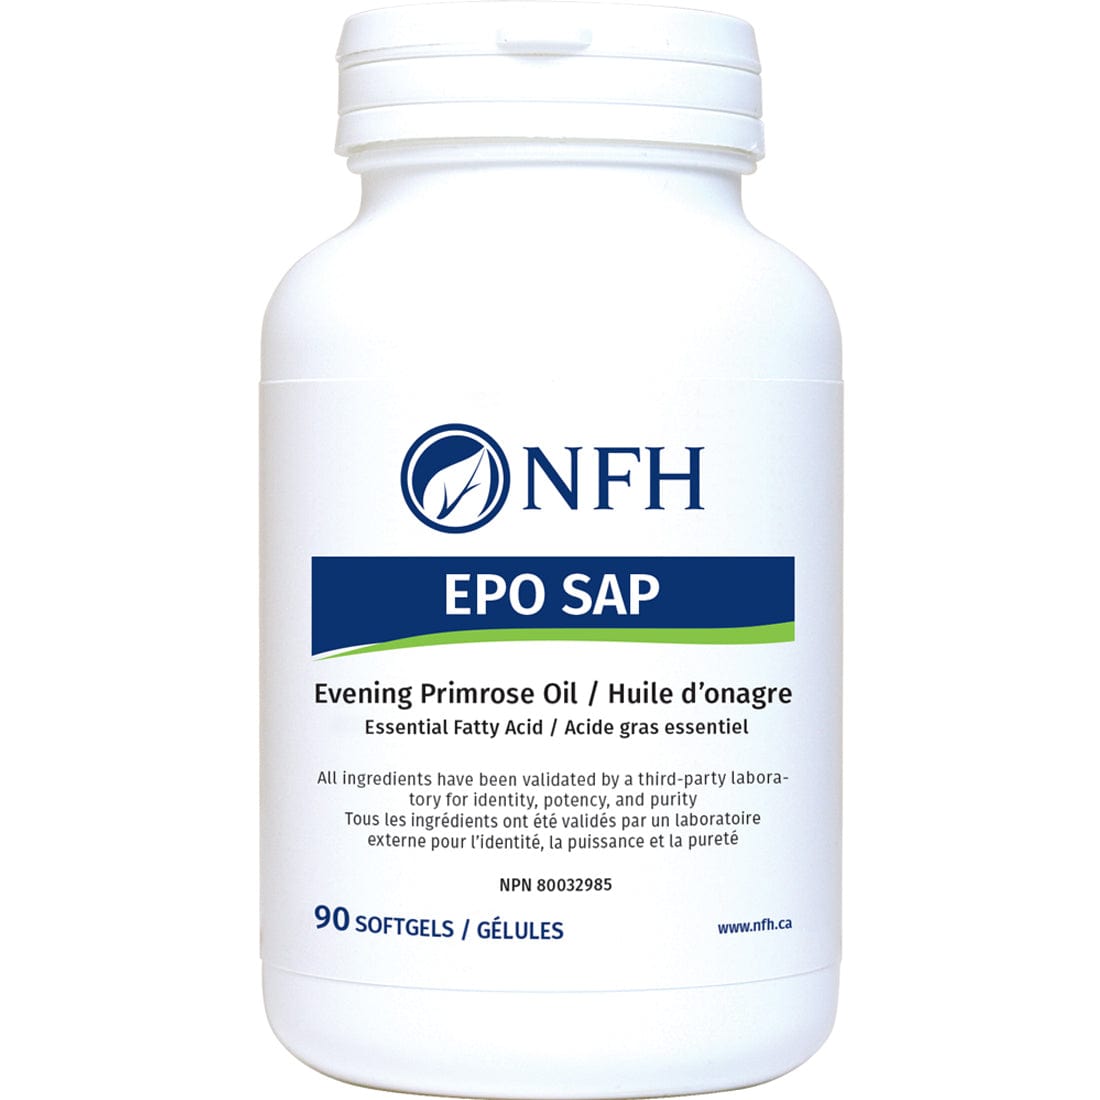 NFH EPO SAP, 90 Softgels